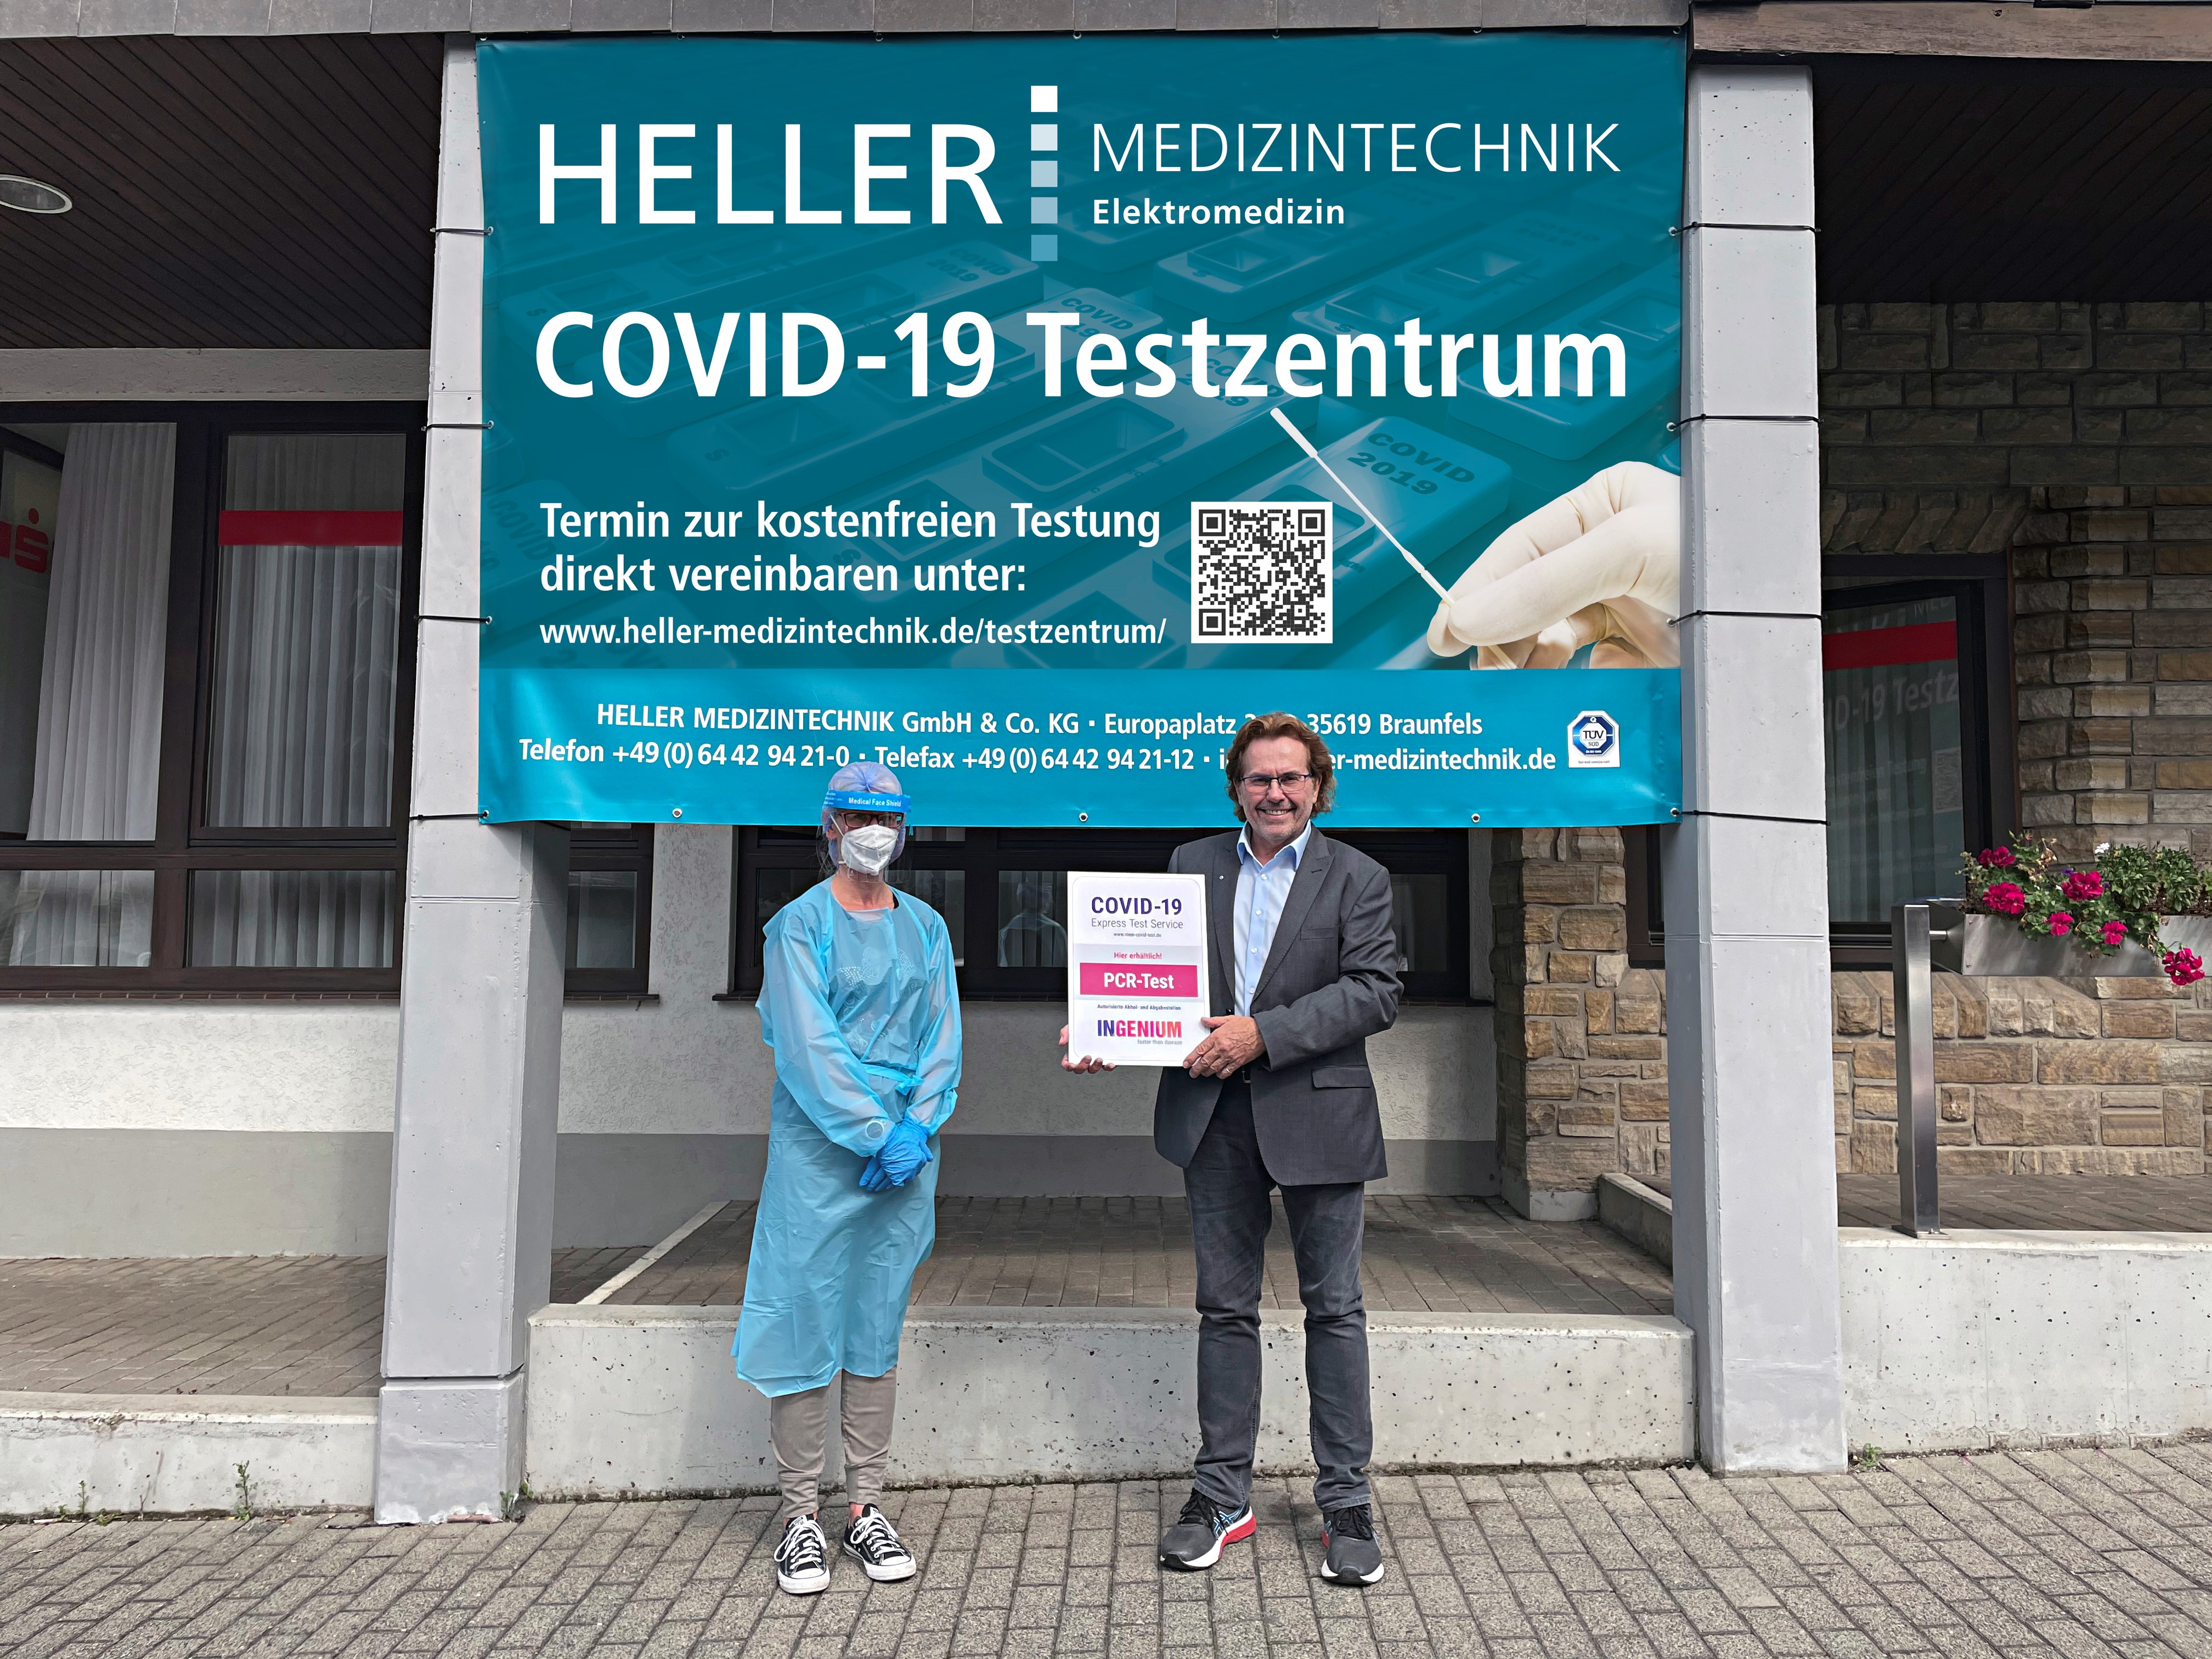 HELLER MEDIZINTECHNIK GmbH & Co. KG setzt mit vier COVID-19 Testzentren im Lahn-Dill-Kreis auf höchste Qualität, Sicherheitsmaßnahmen und Hygienestandards